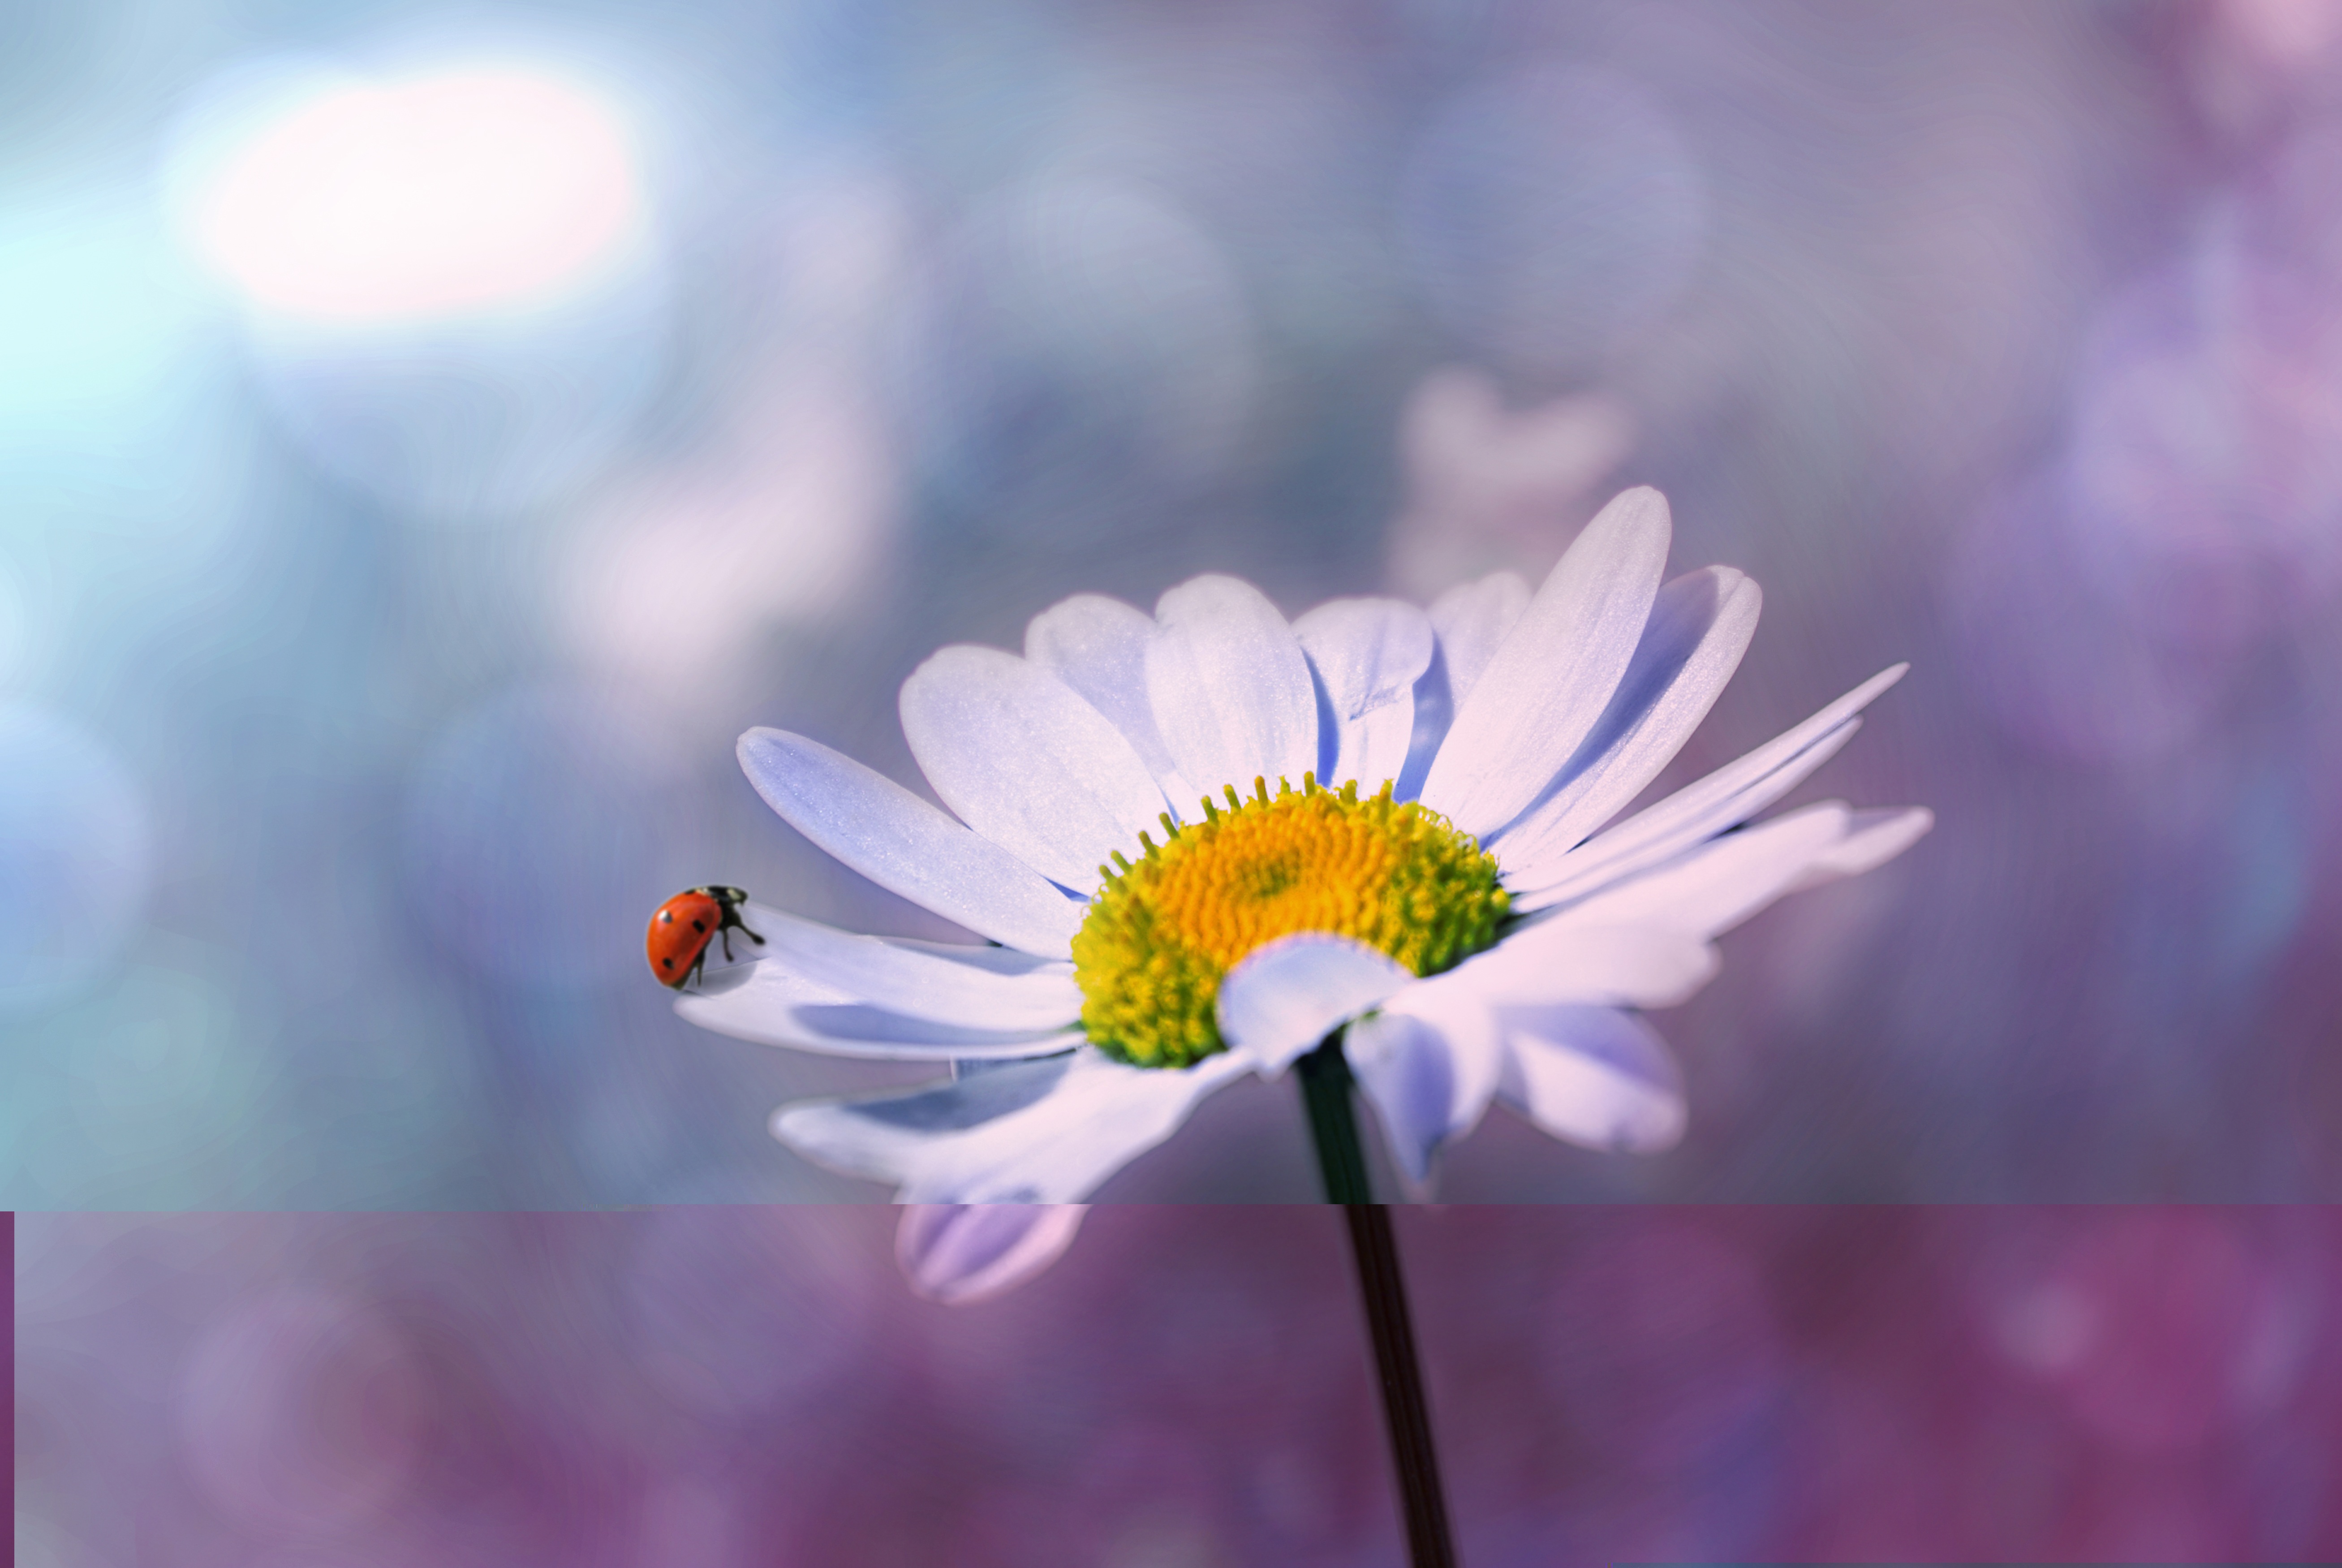 Ladybug in the garden photo